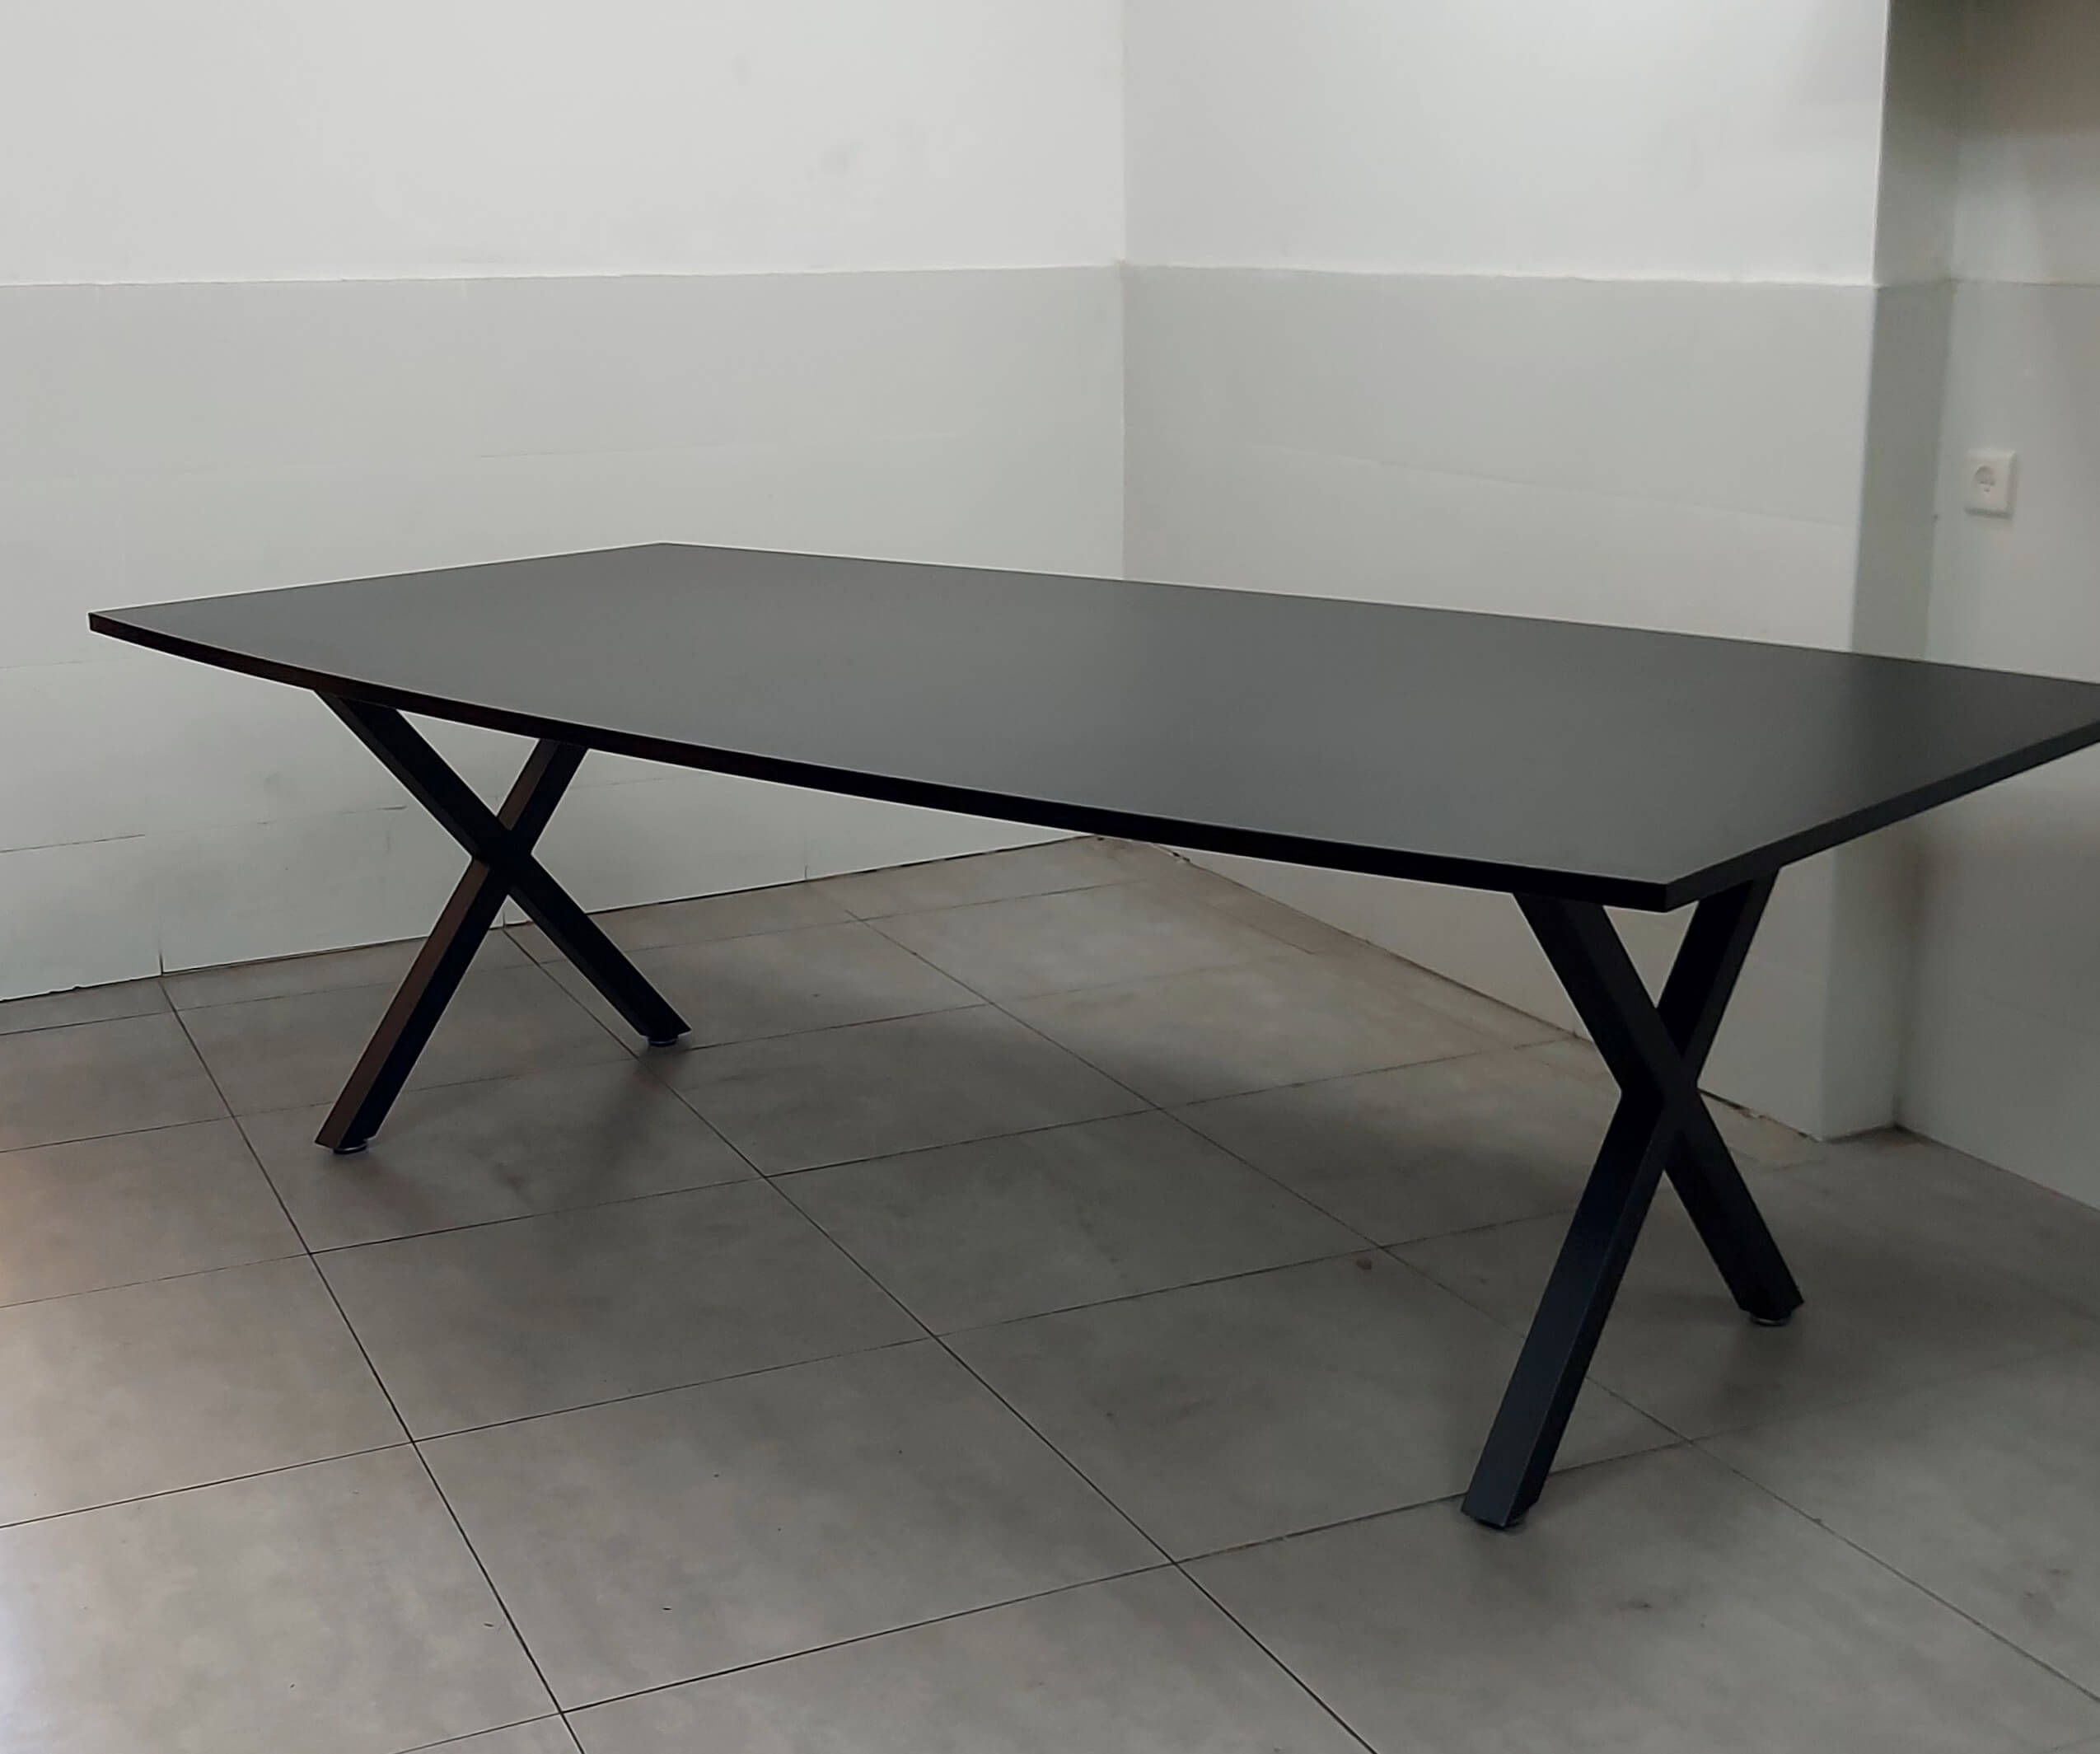 שולחן ישיבות אובלי במידה 240X120 גוון שחור רגל מתכת X גוון שחור/לבן באספקה מיידית!